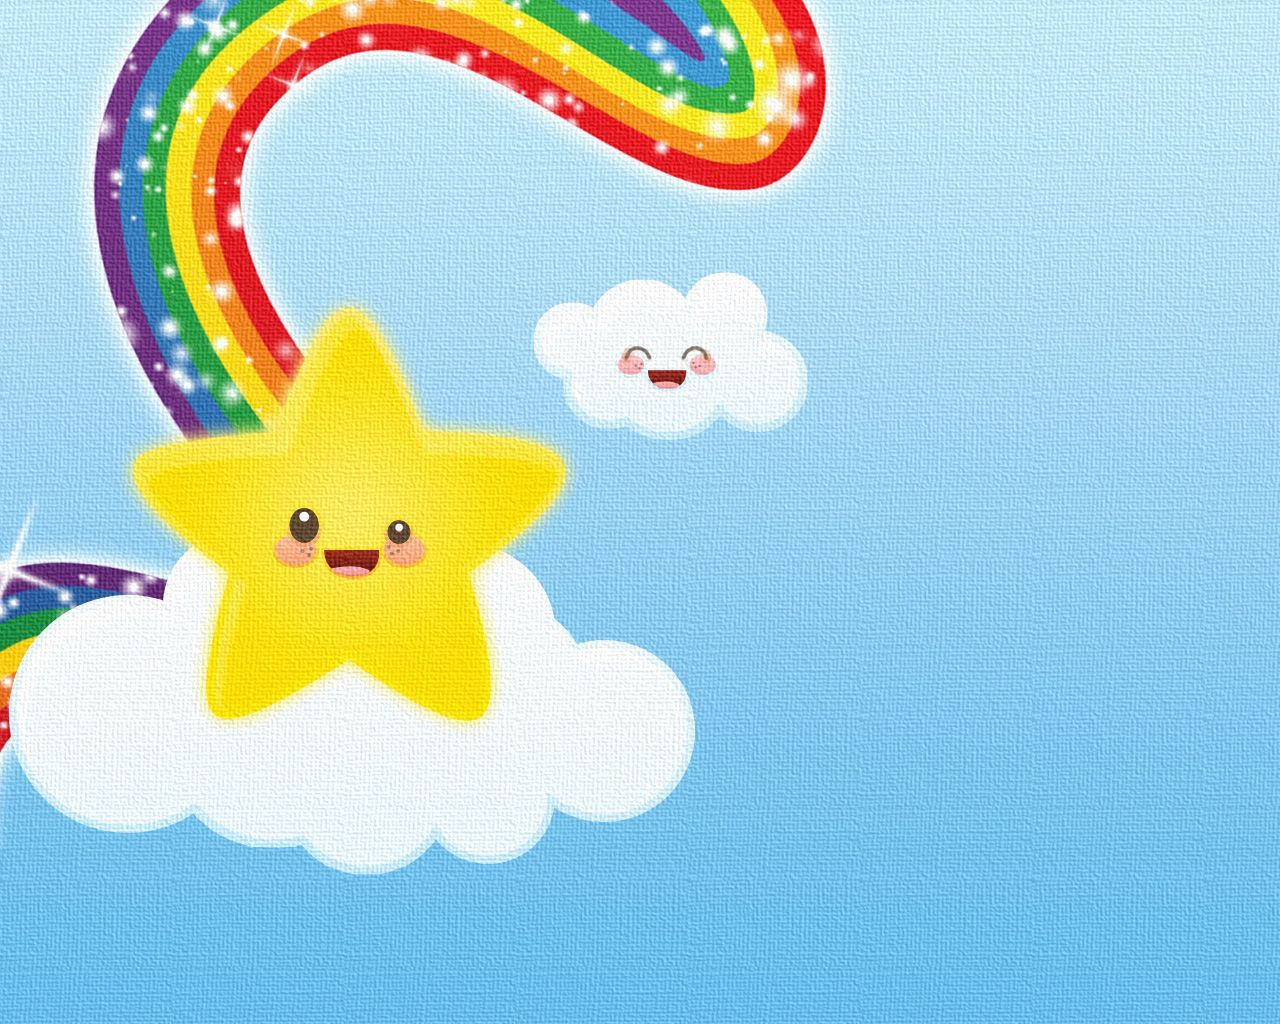 Kawaii Wallpaper: Rainbow Star. Kawaii cute wallpaper, Cute wallpaper, Rainbow cartoon